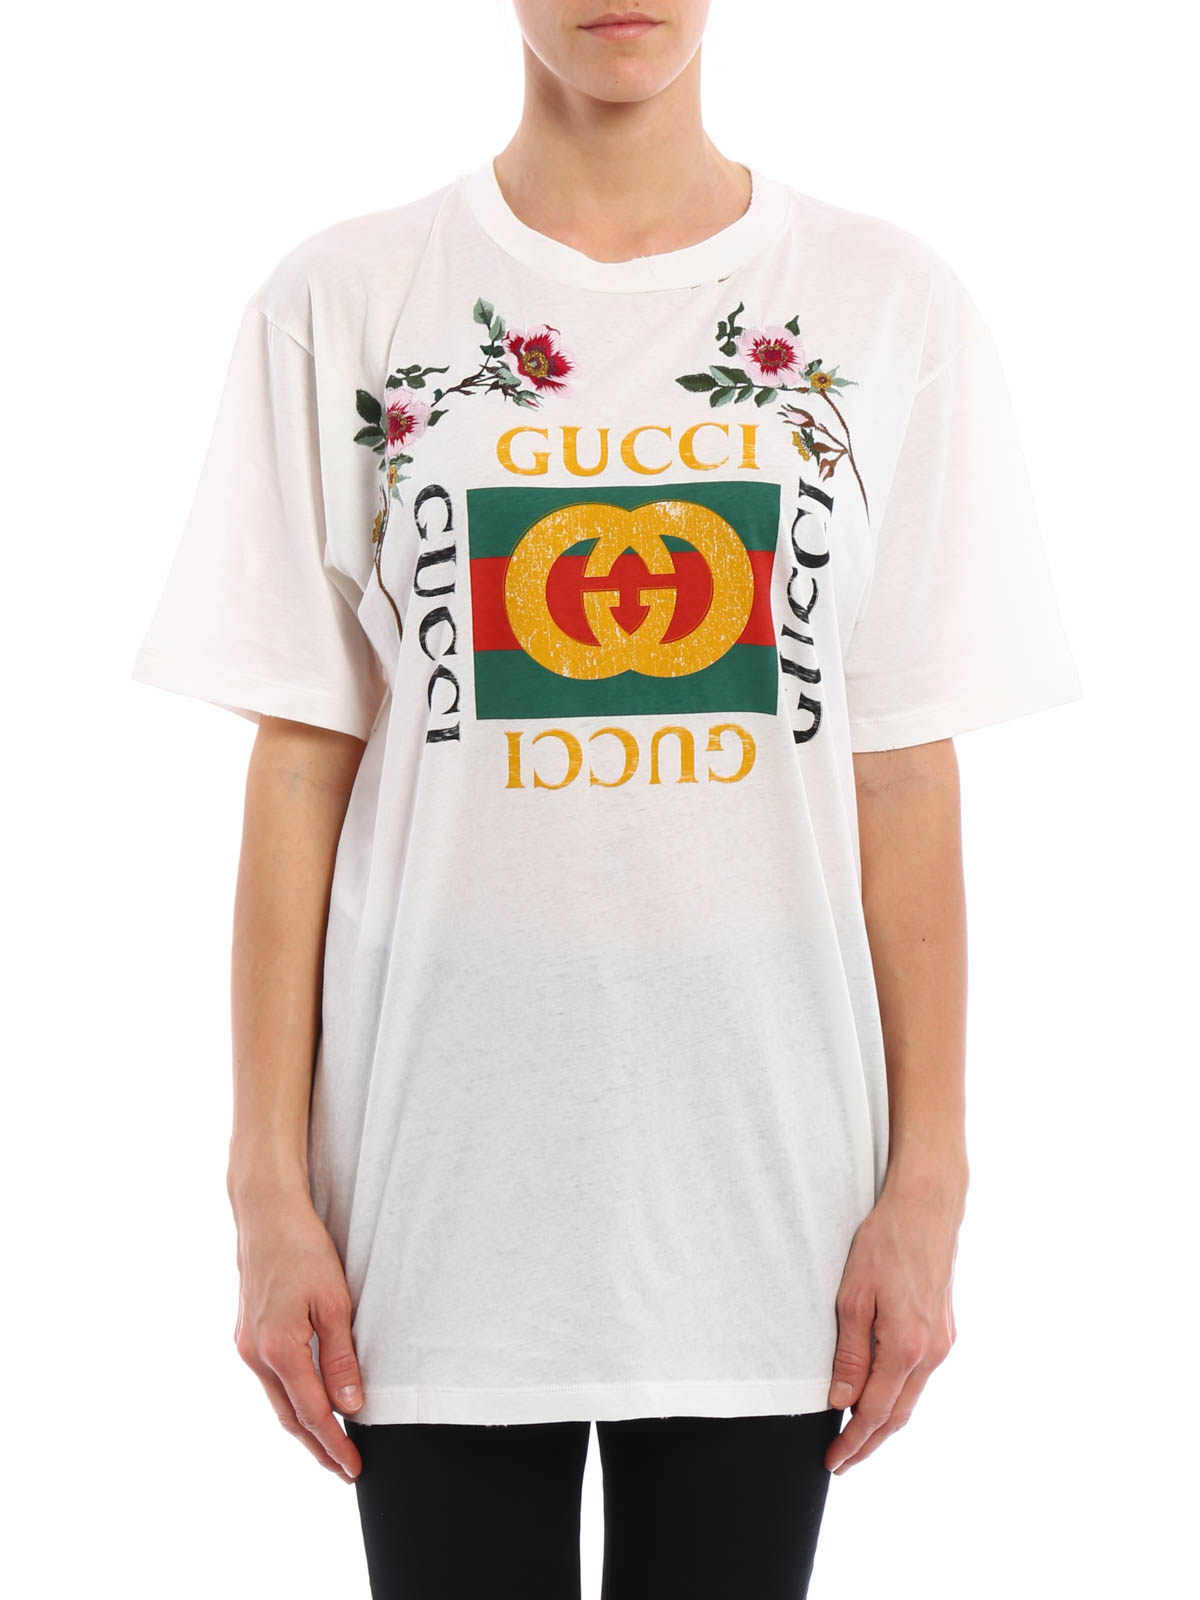 gucci flower t shirt